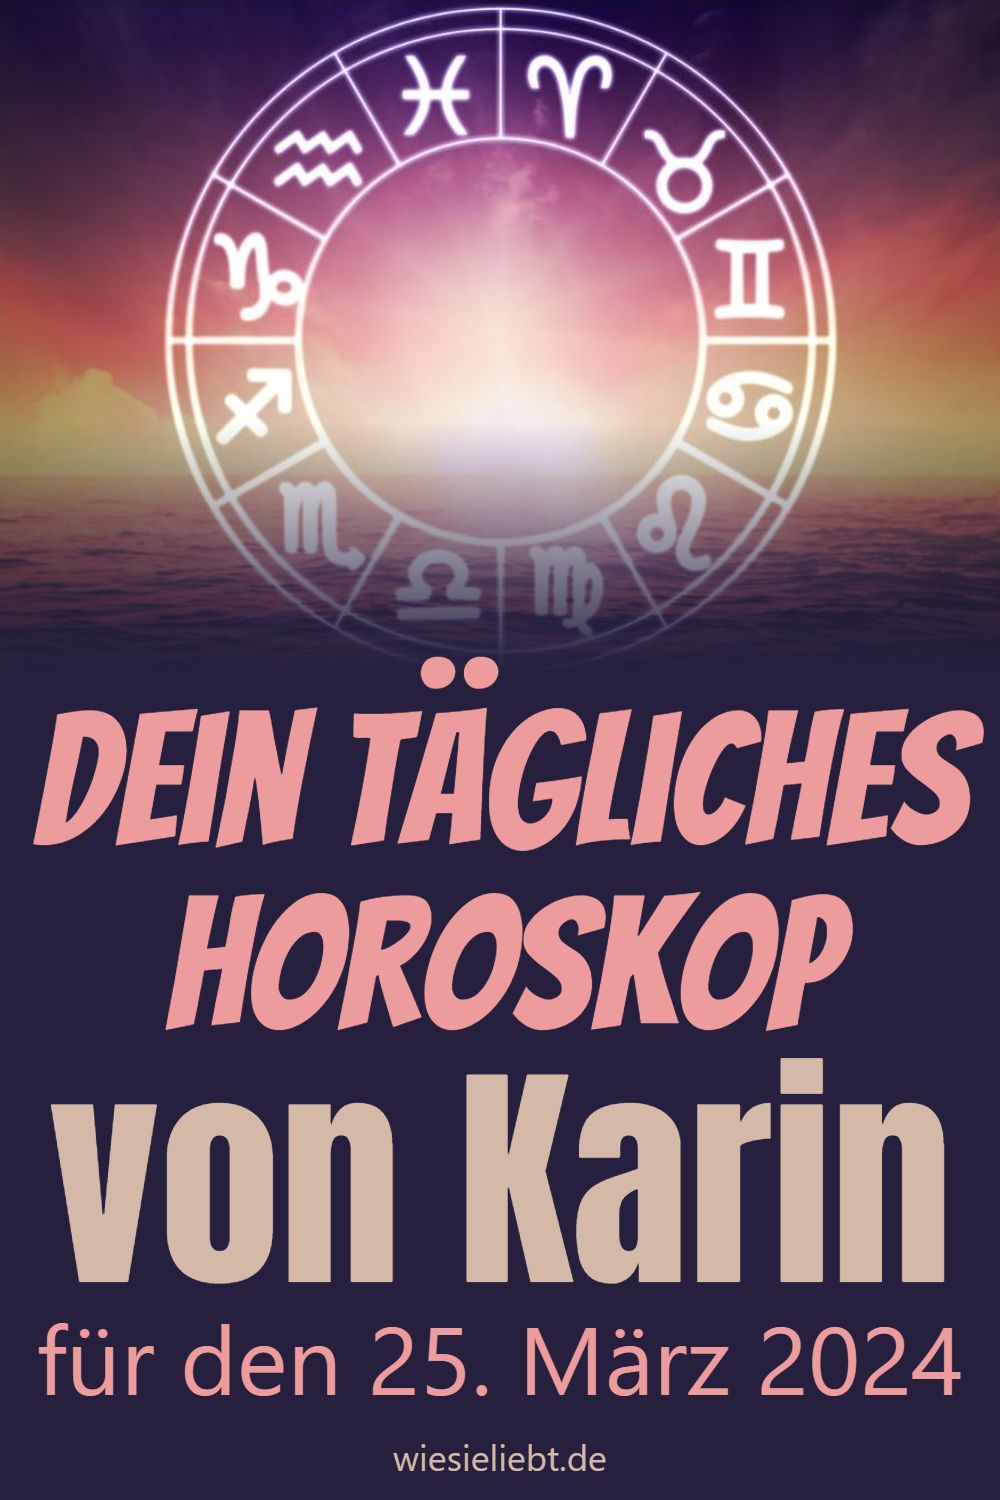 Dein tägliches Horoskop von Karin für den 25. März 2024